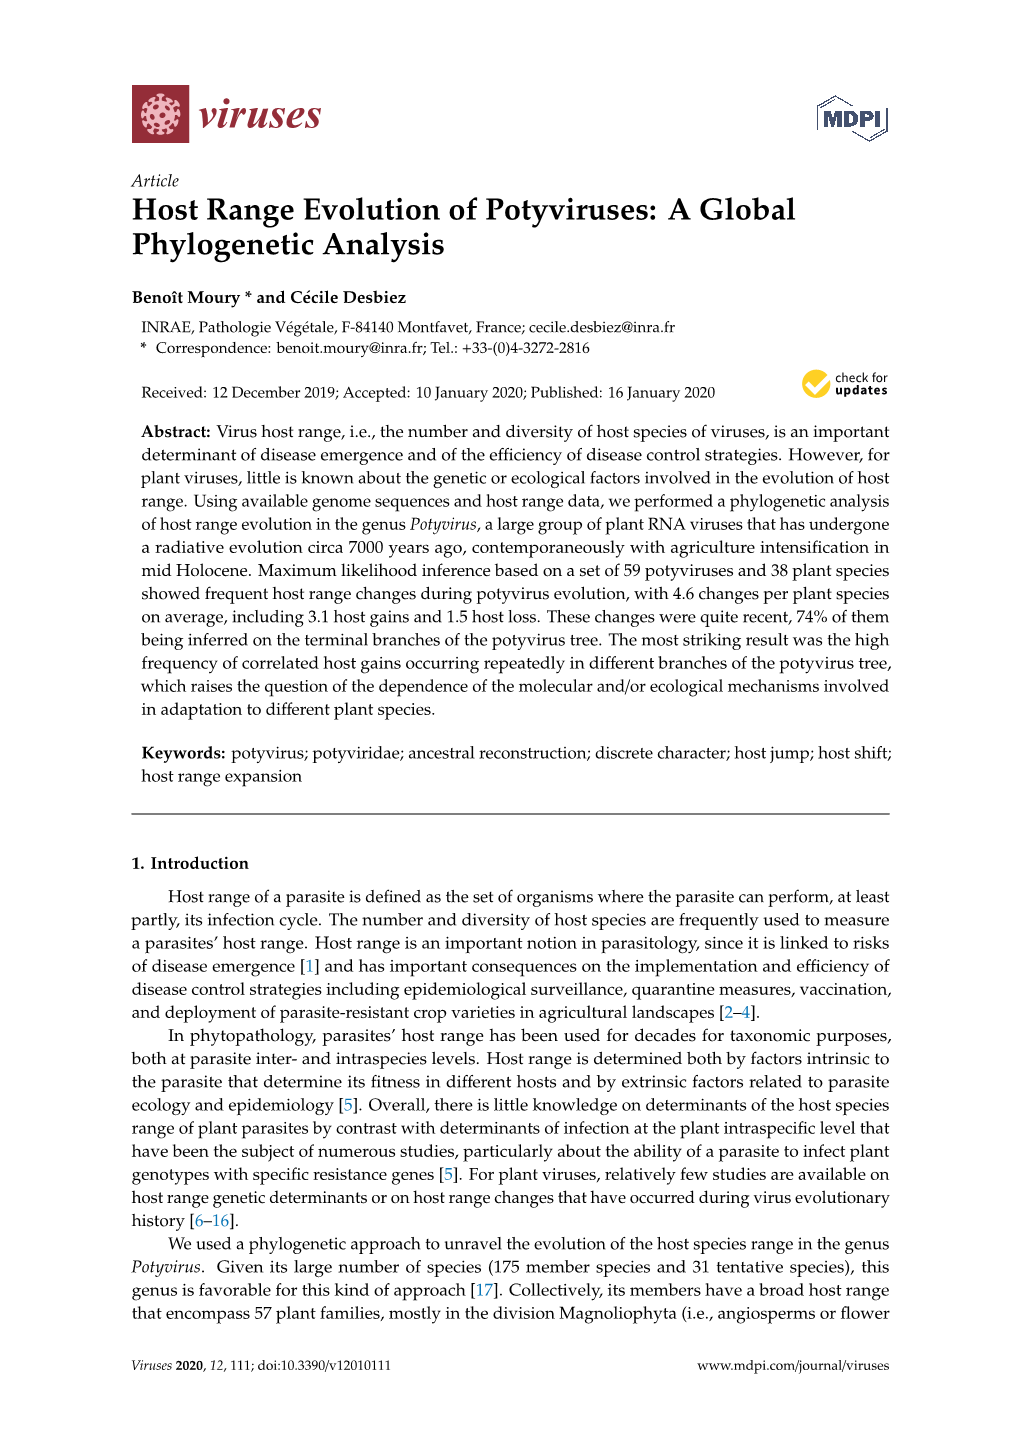 Host Range Evolution of Potyviruses: a Global Phylogenetic Analysis